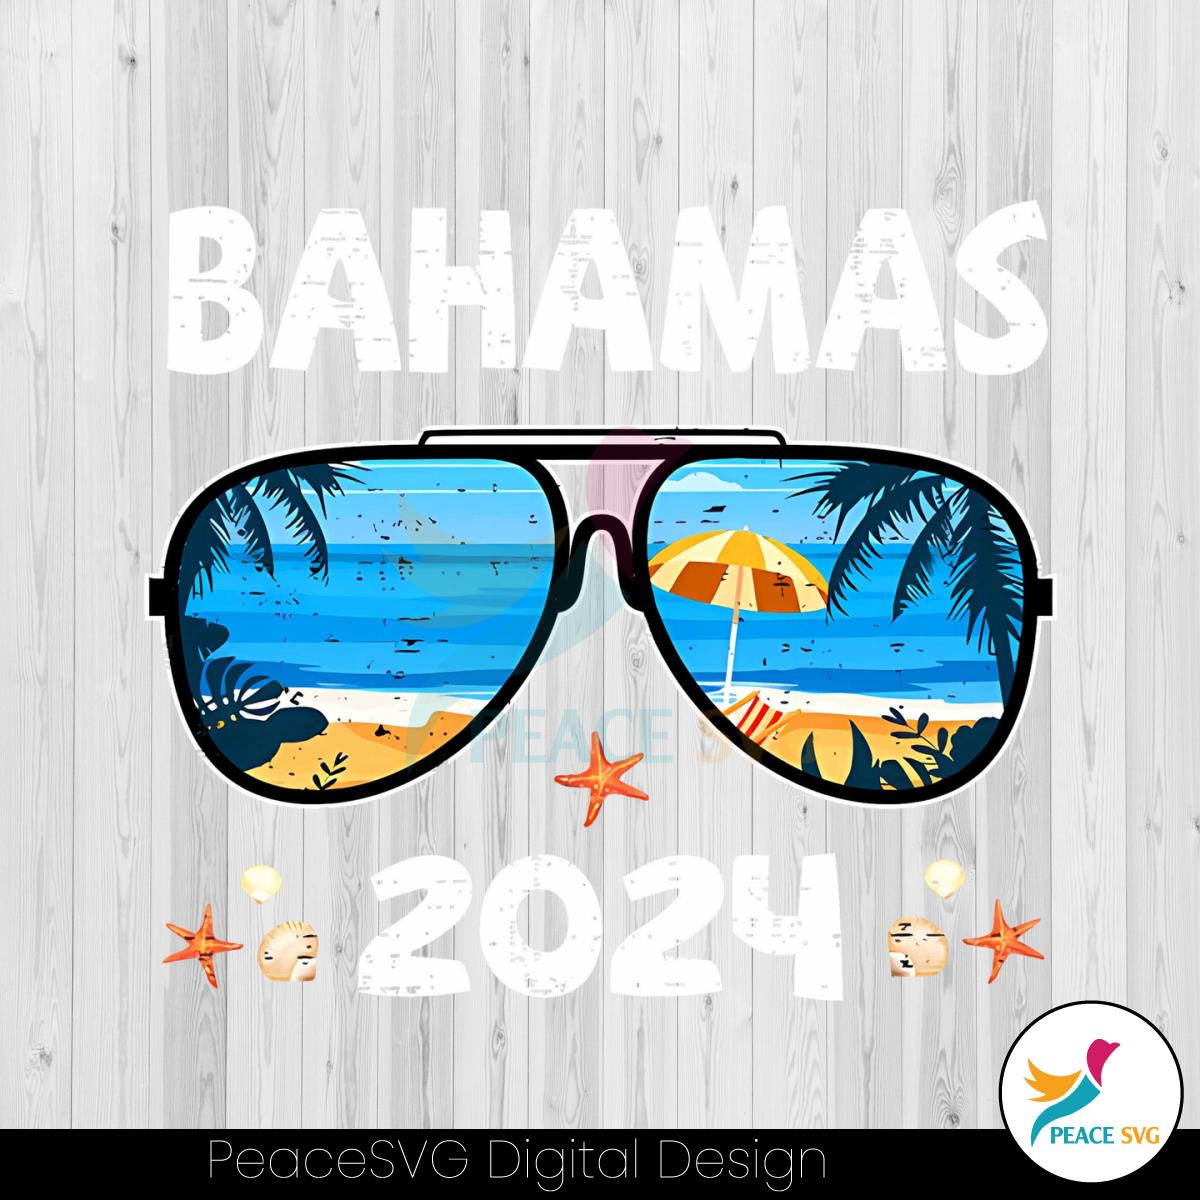 vintage-bahamas-2024-bahamas-beach-png-sublimation